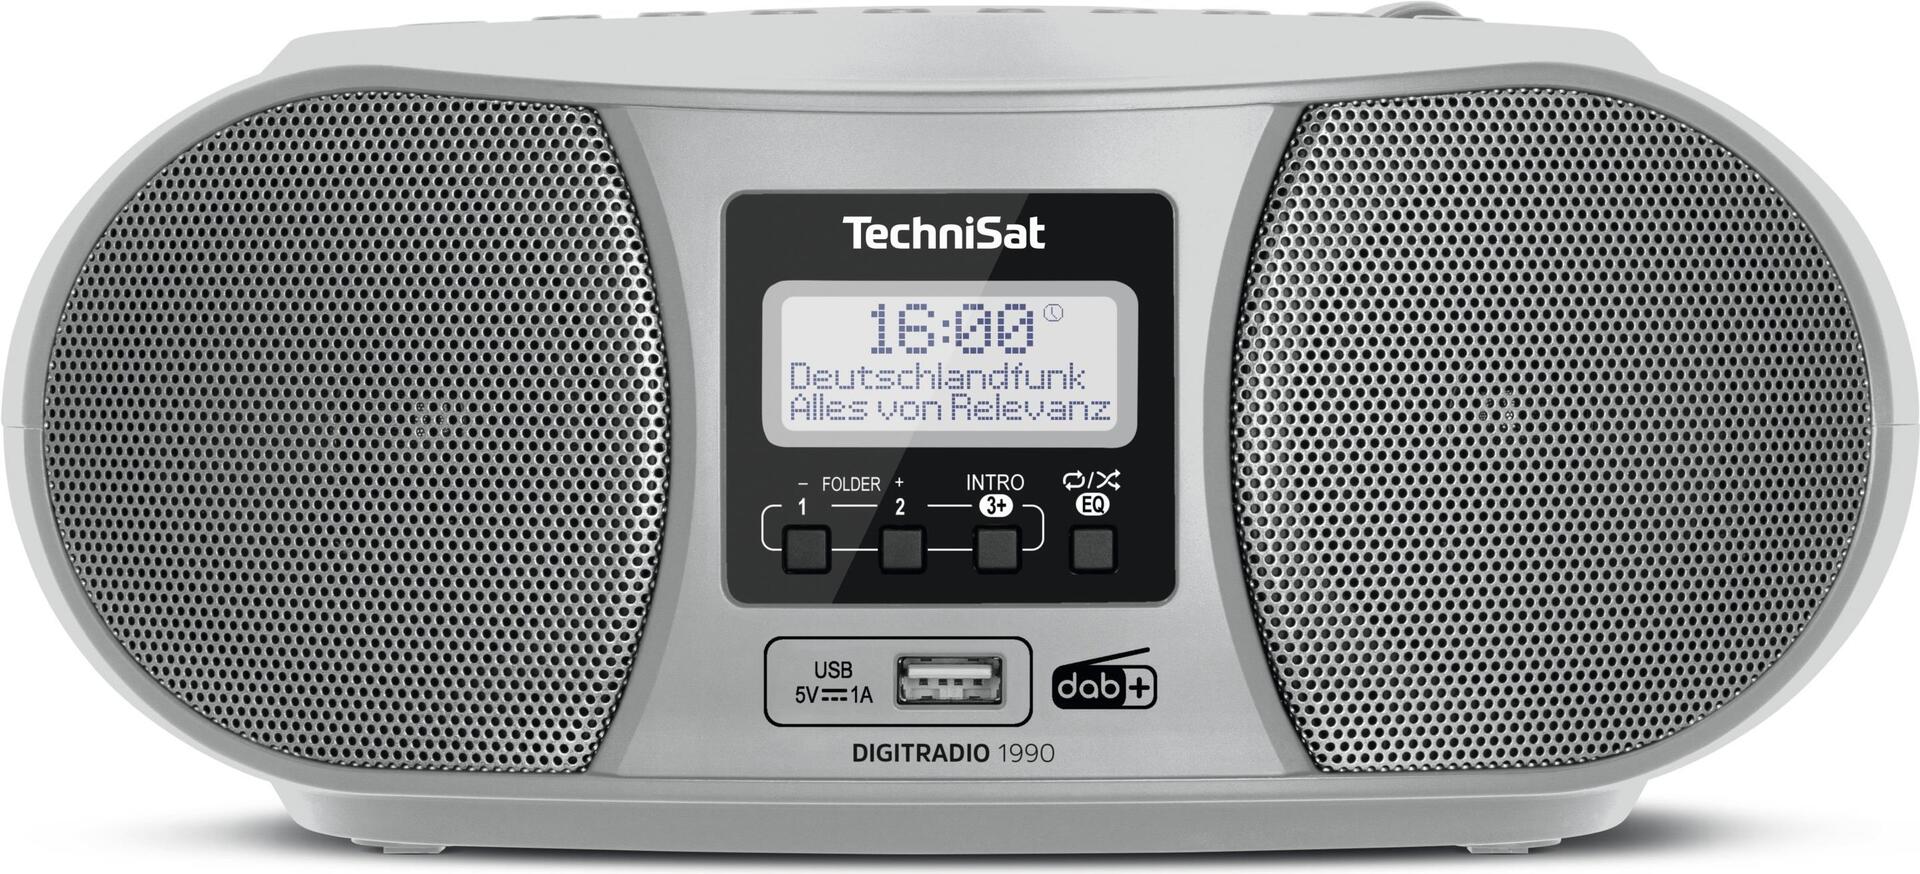 TechniSat DigitRadio 1990